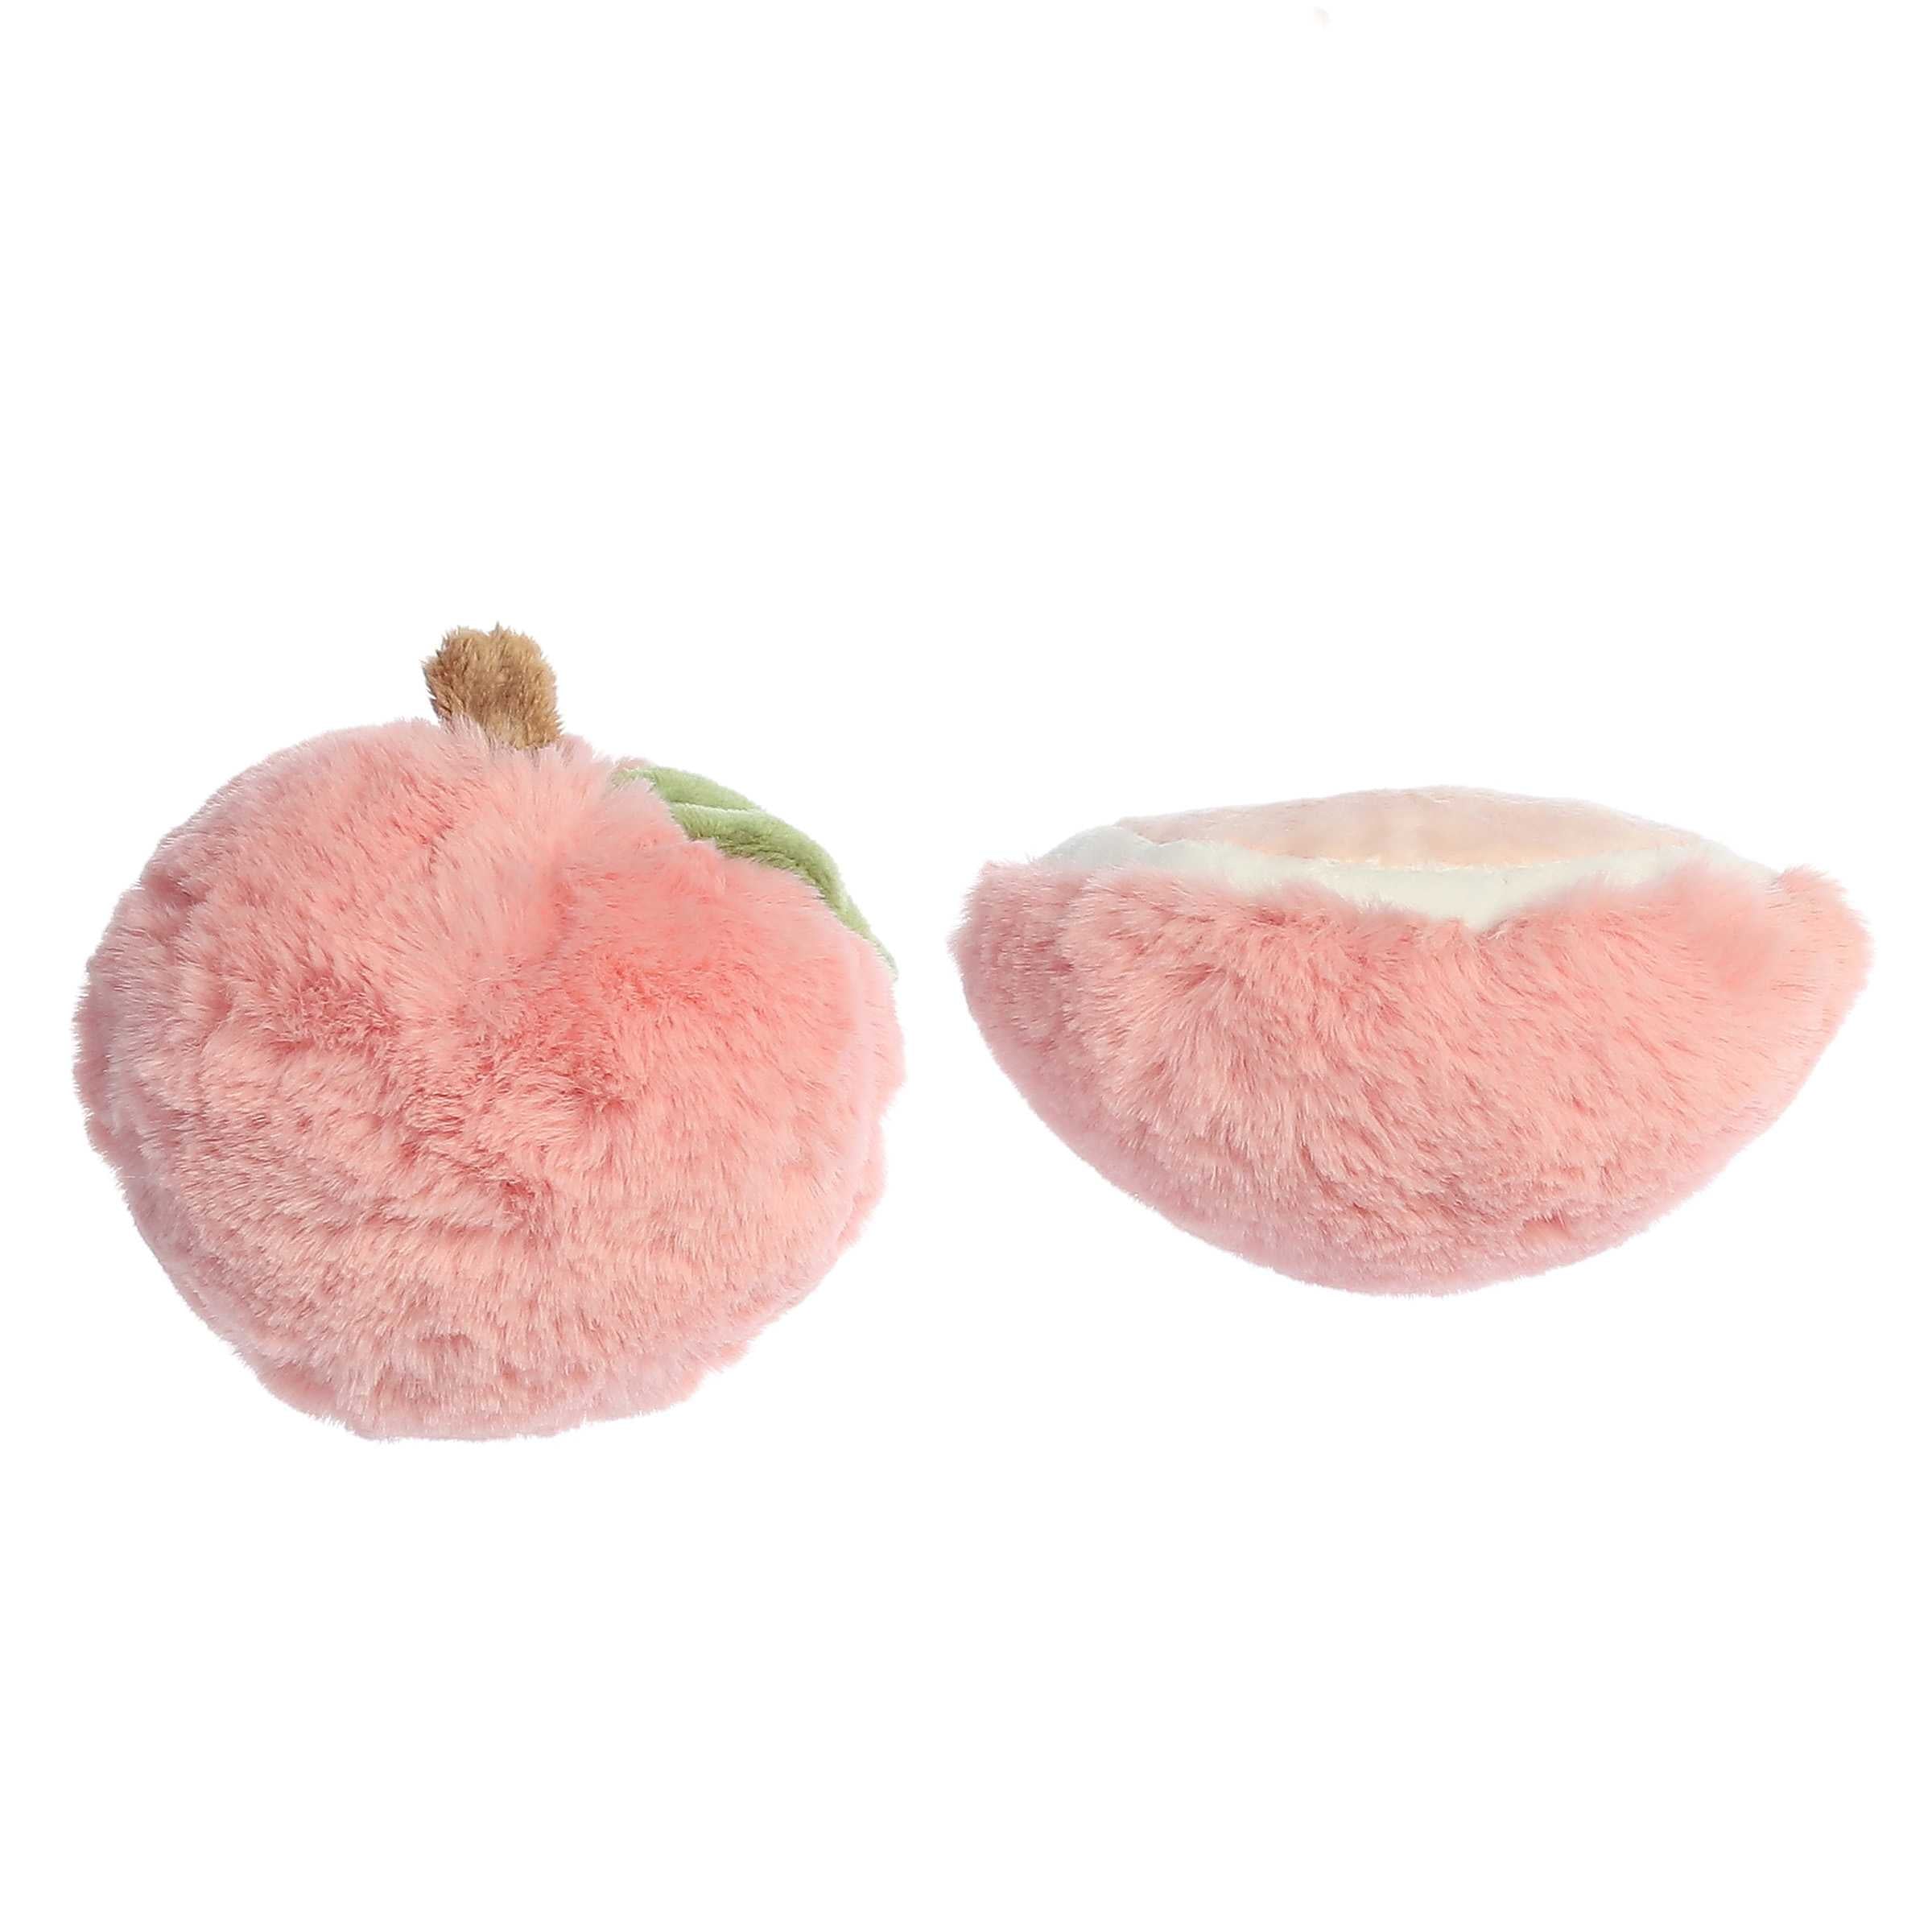 ebba™ - Precious Produce™ - Peach Rattle & Crinkle Set